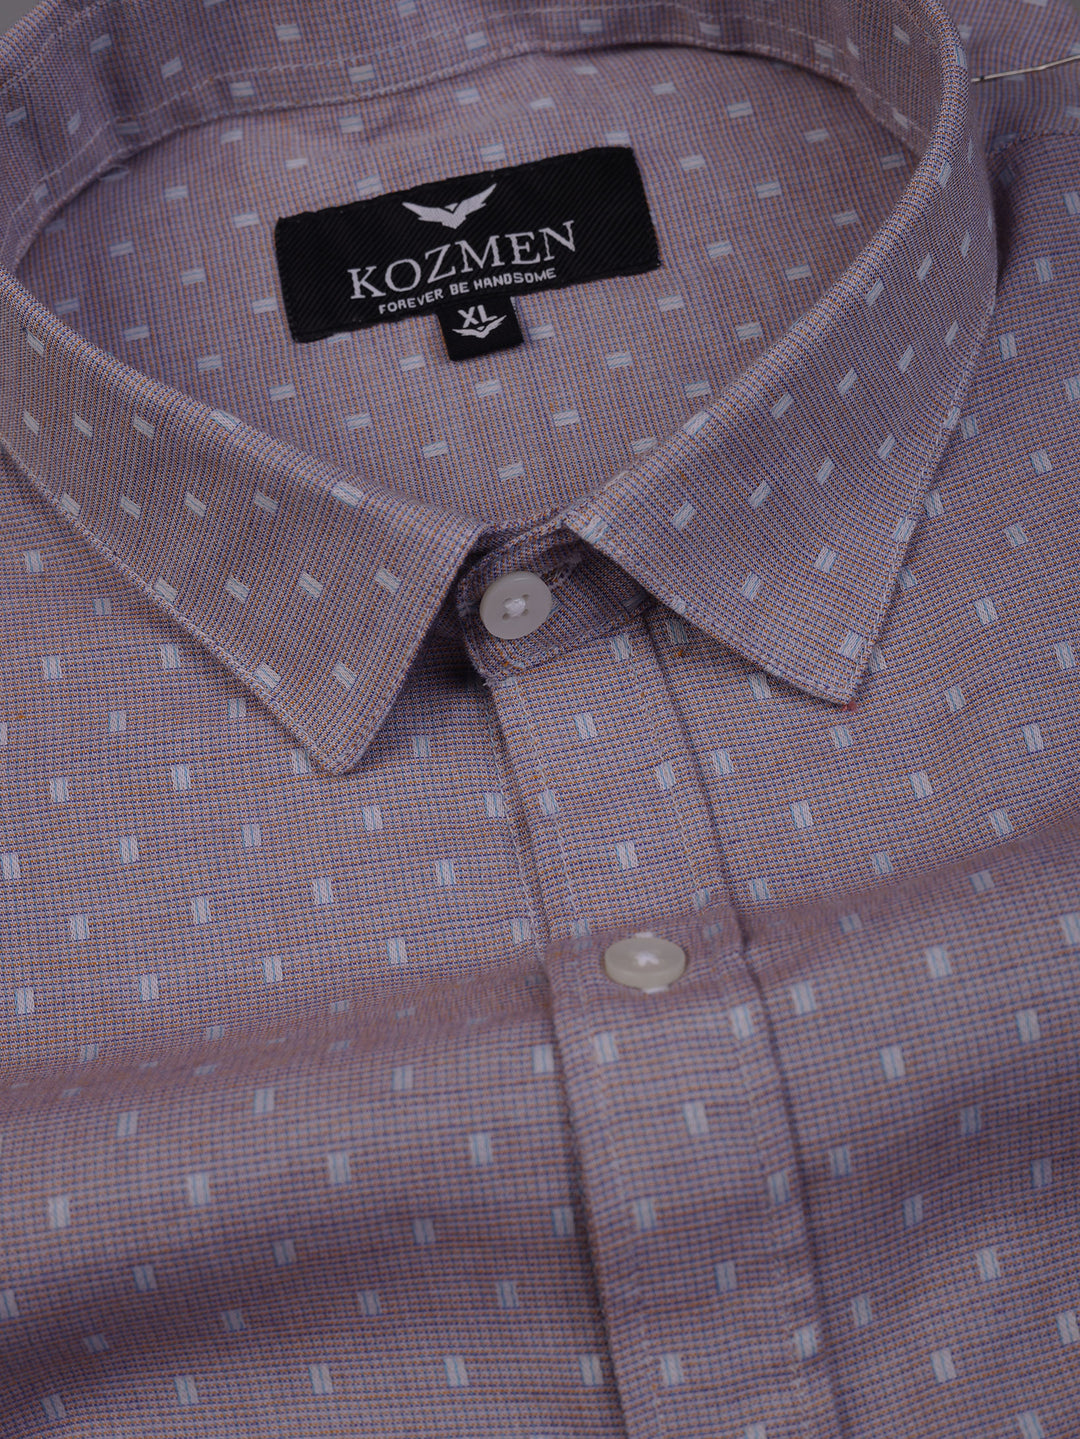 Premium Lavender Dobby Cotton Checks Shirt